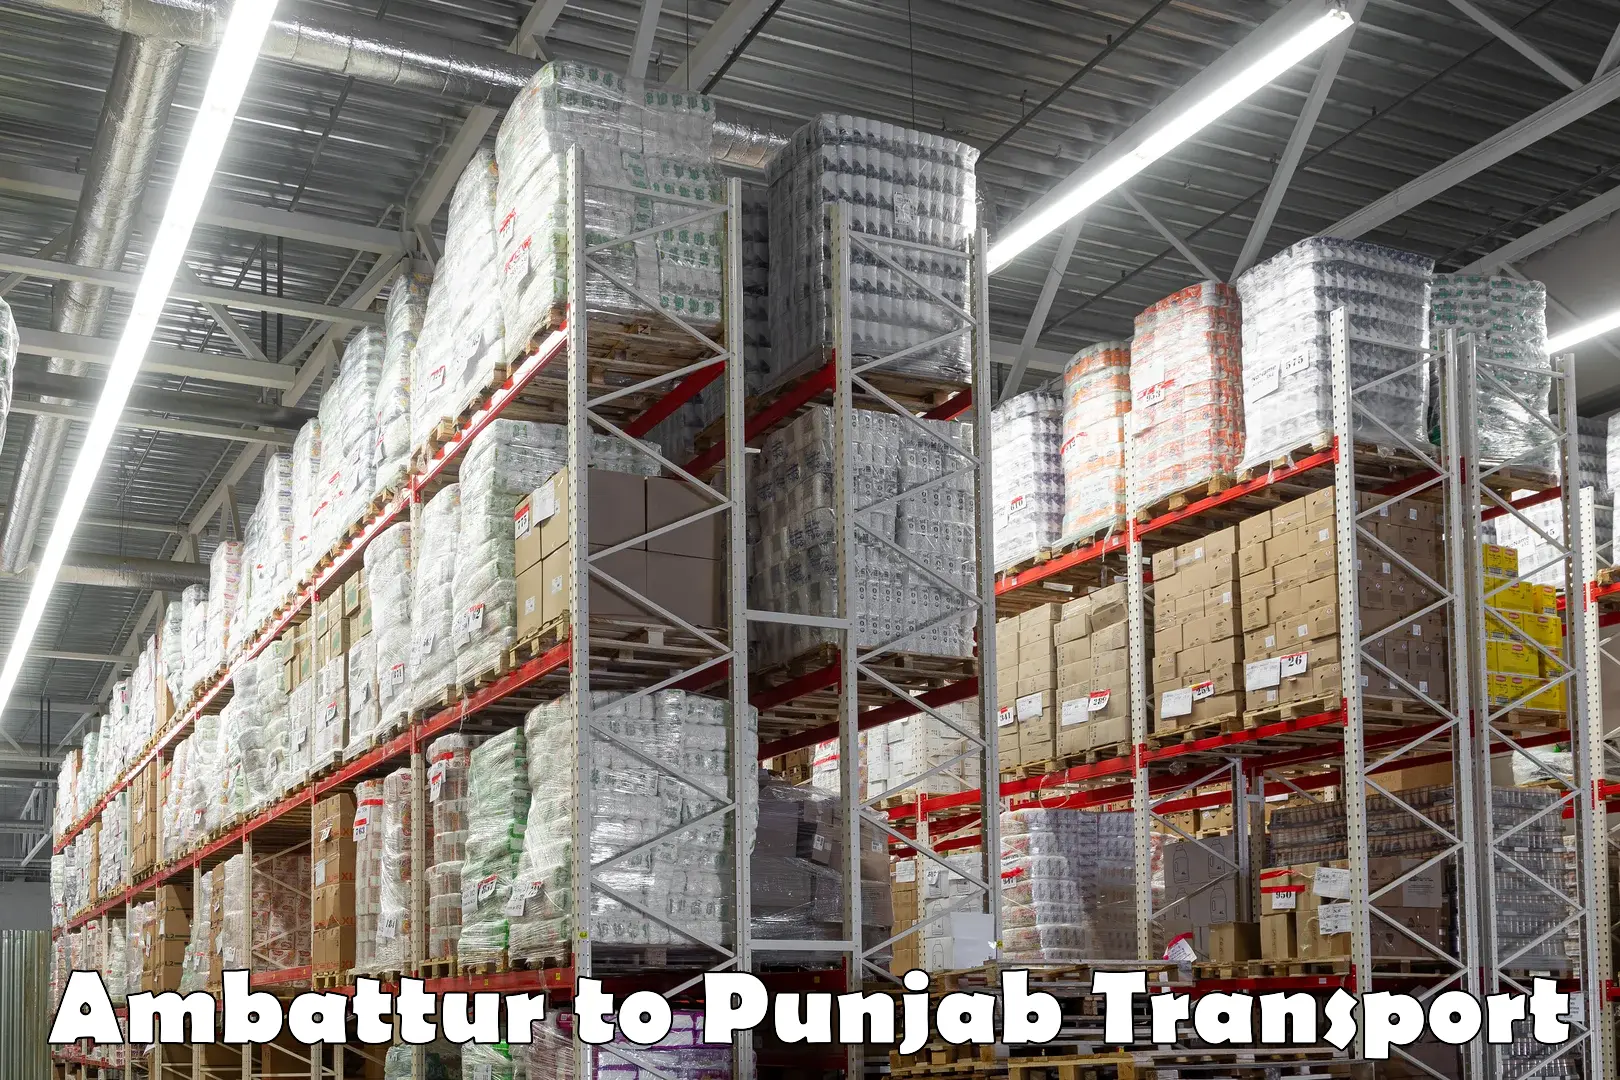 Furniture transport service Ambattur to Punjab